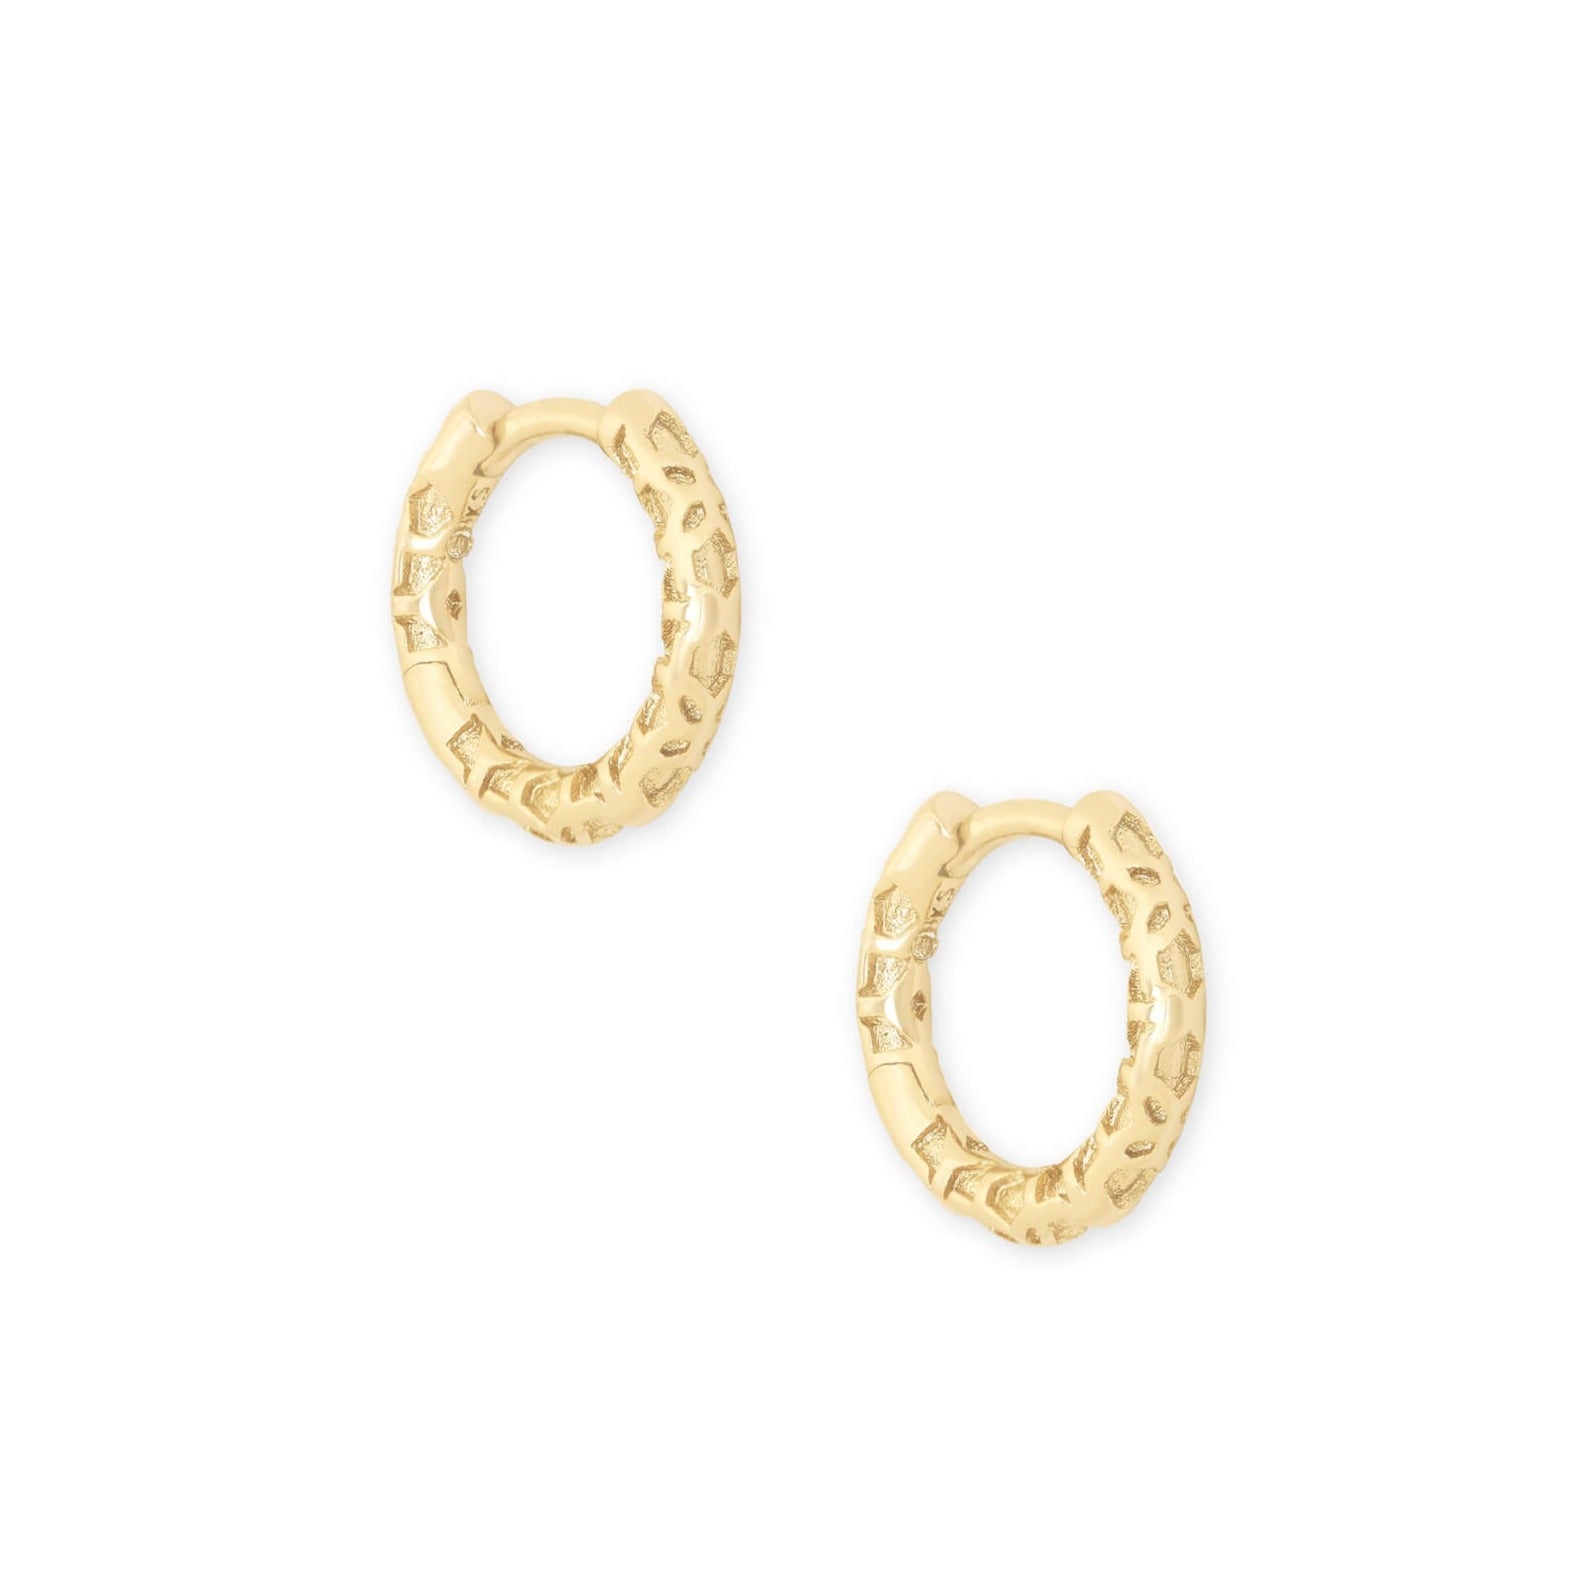 Kendra Scott Maggie Filigree Huggie Hoop Earrings in Gold Plated